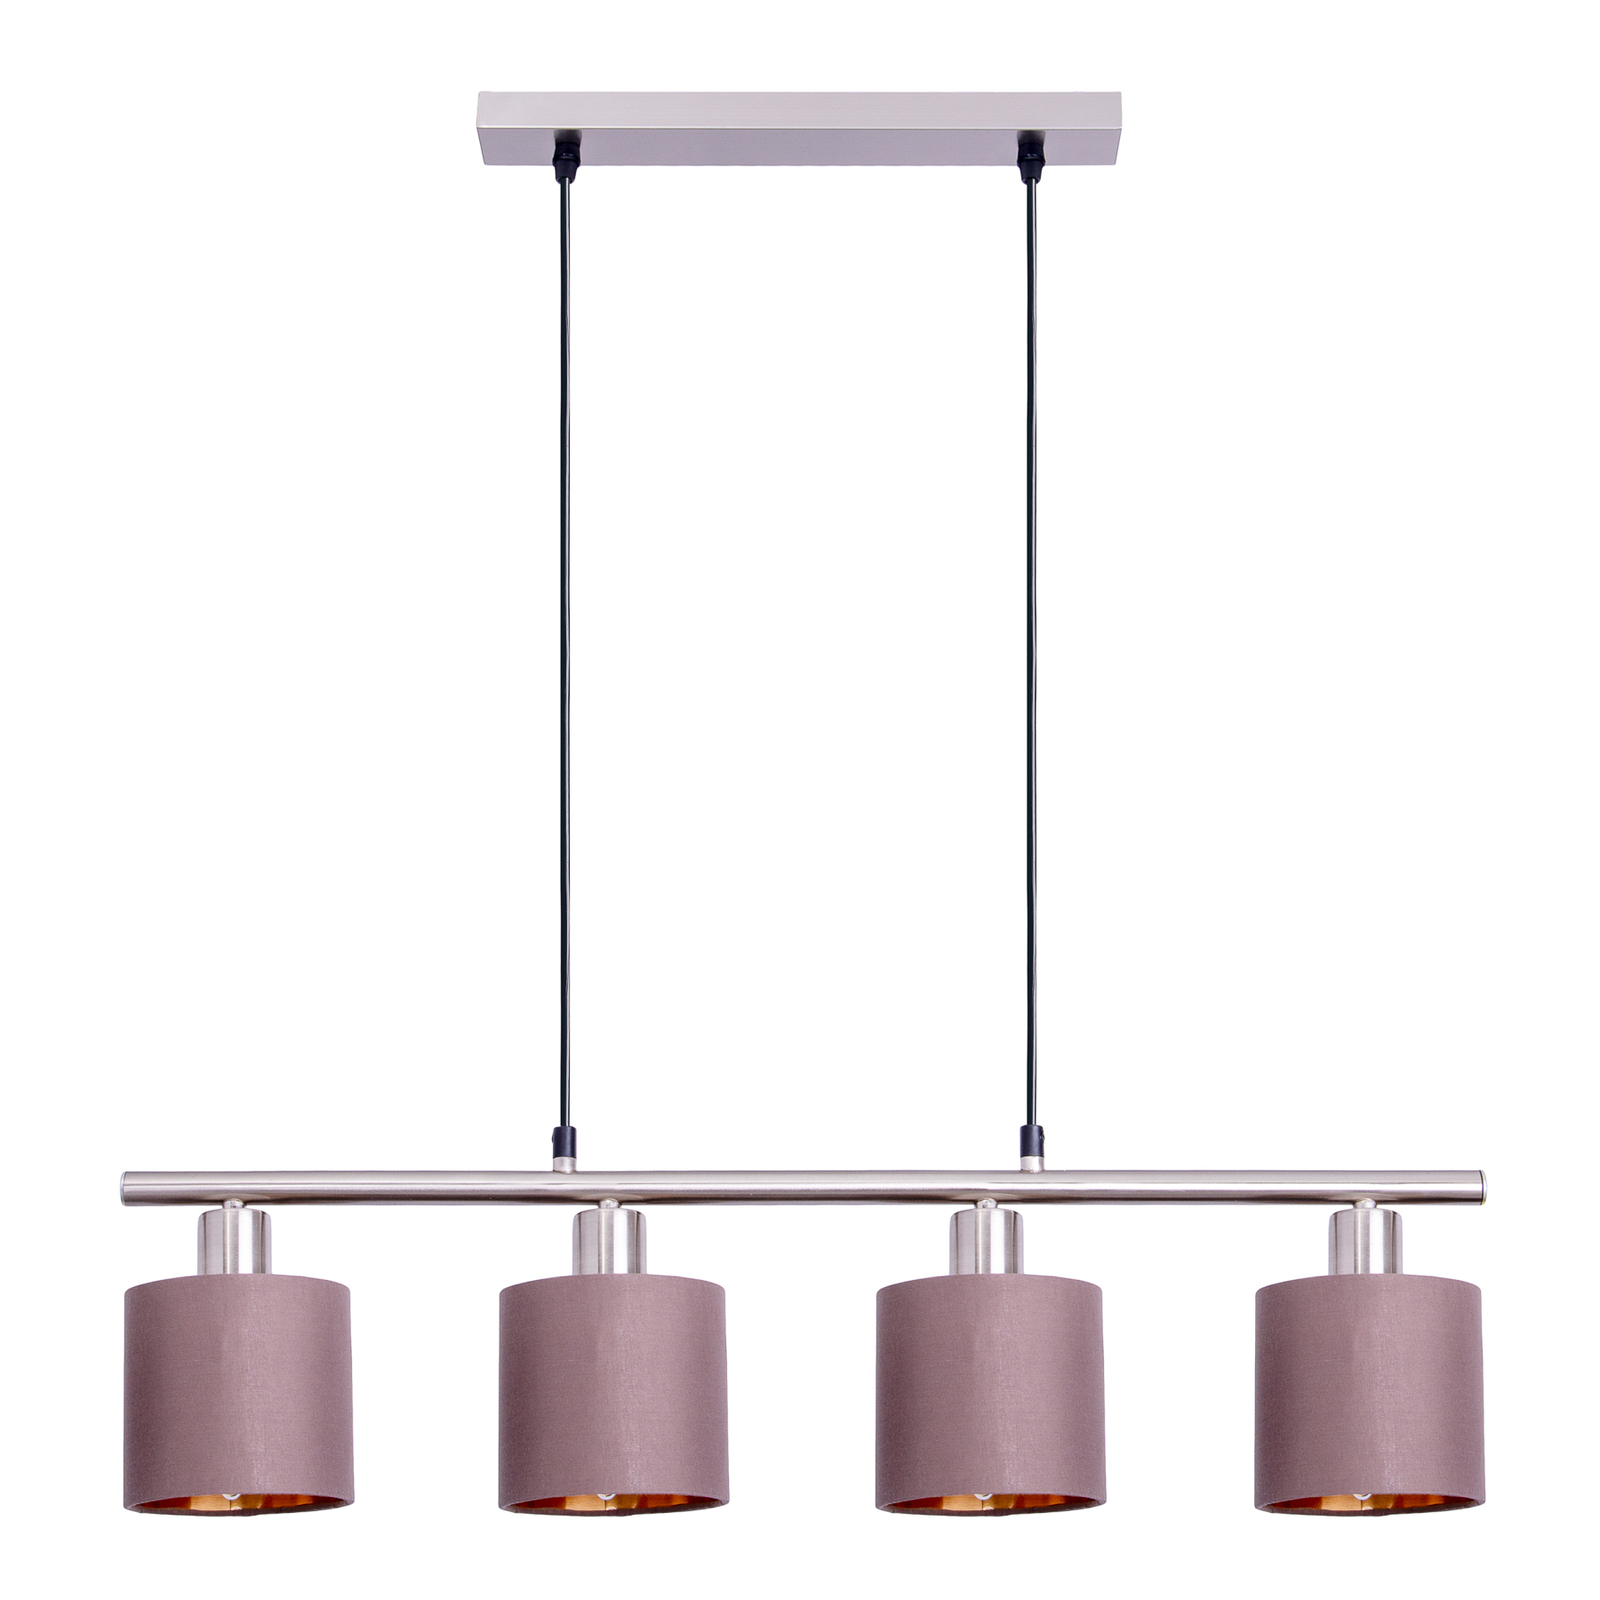 Hanglamp Maron, 4-lamps, textiel, bruin/goud